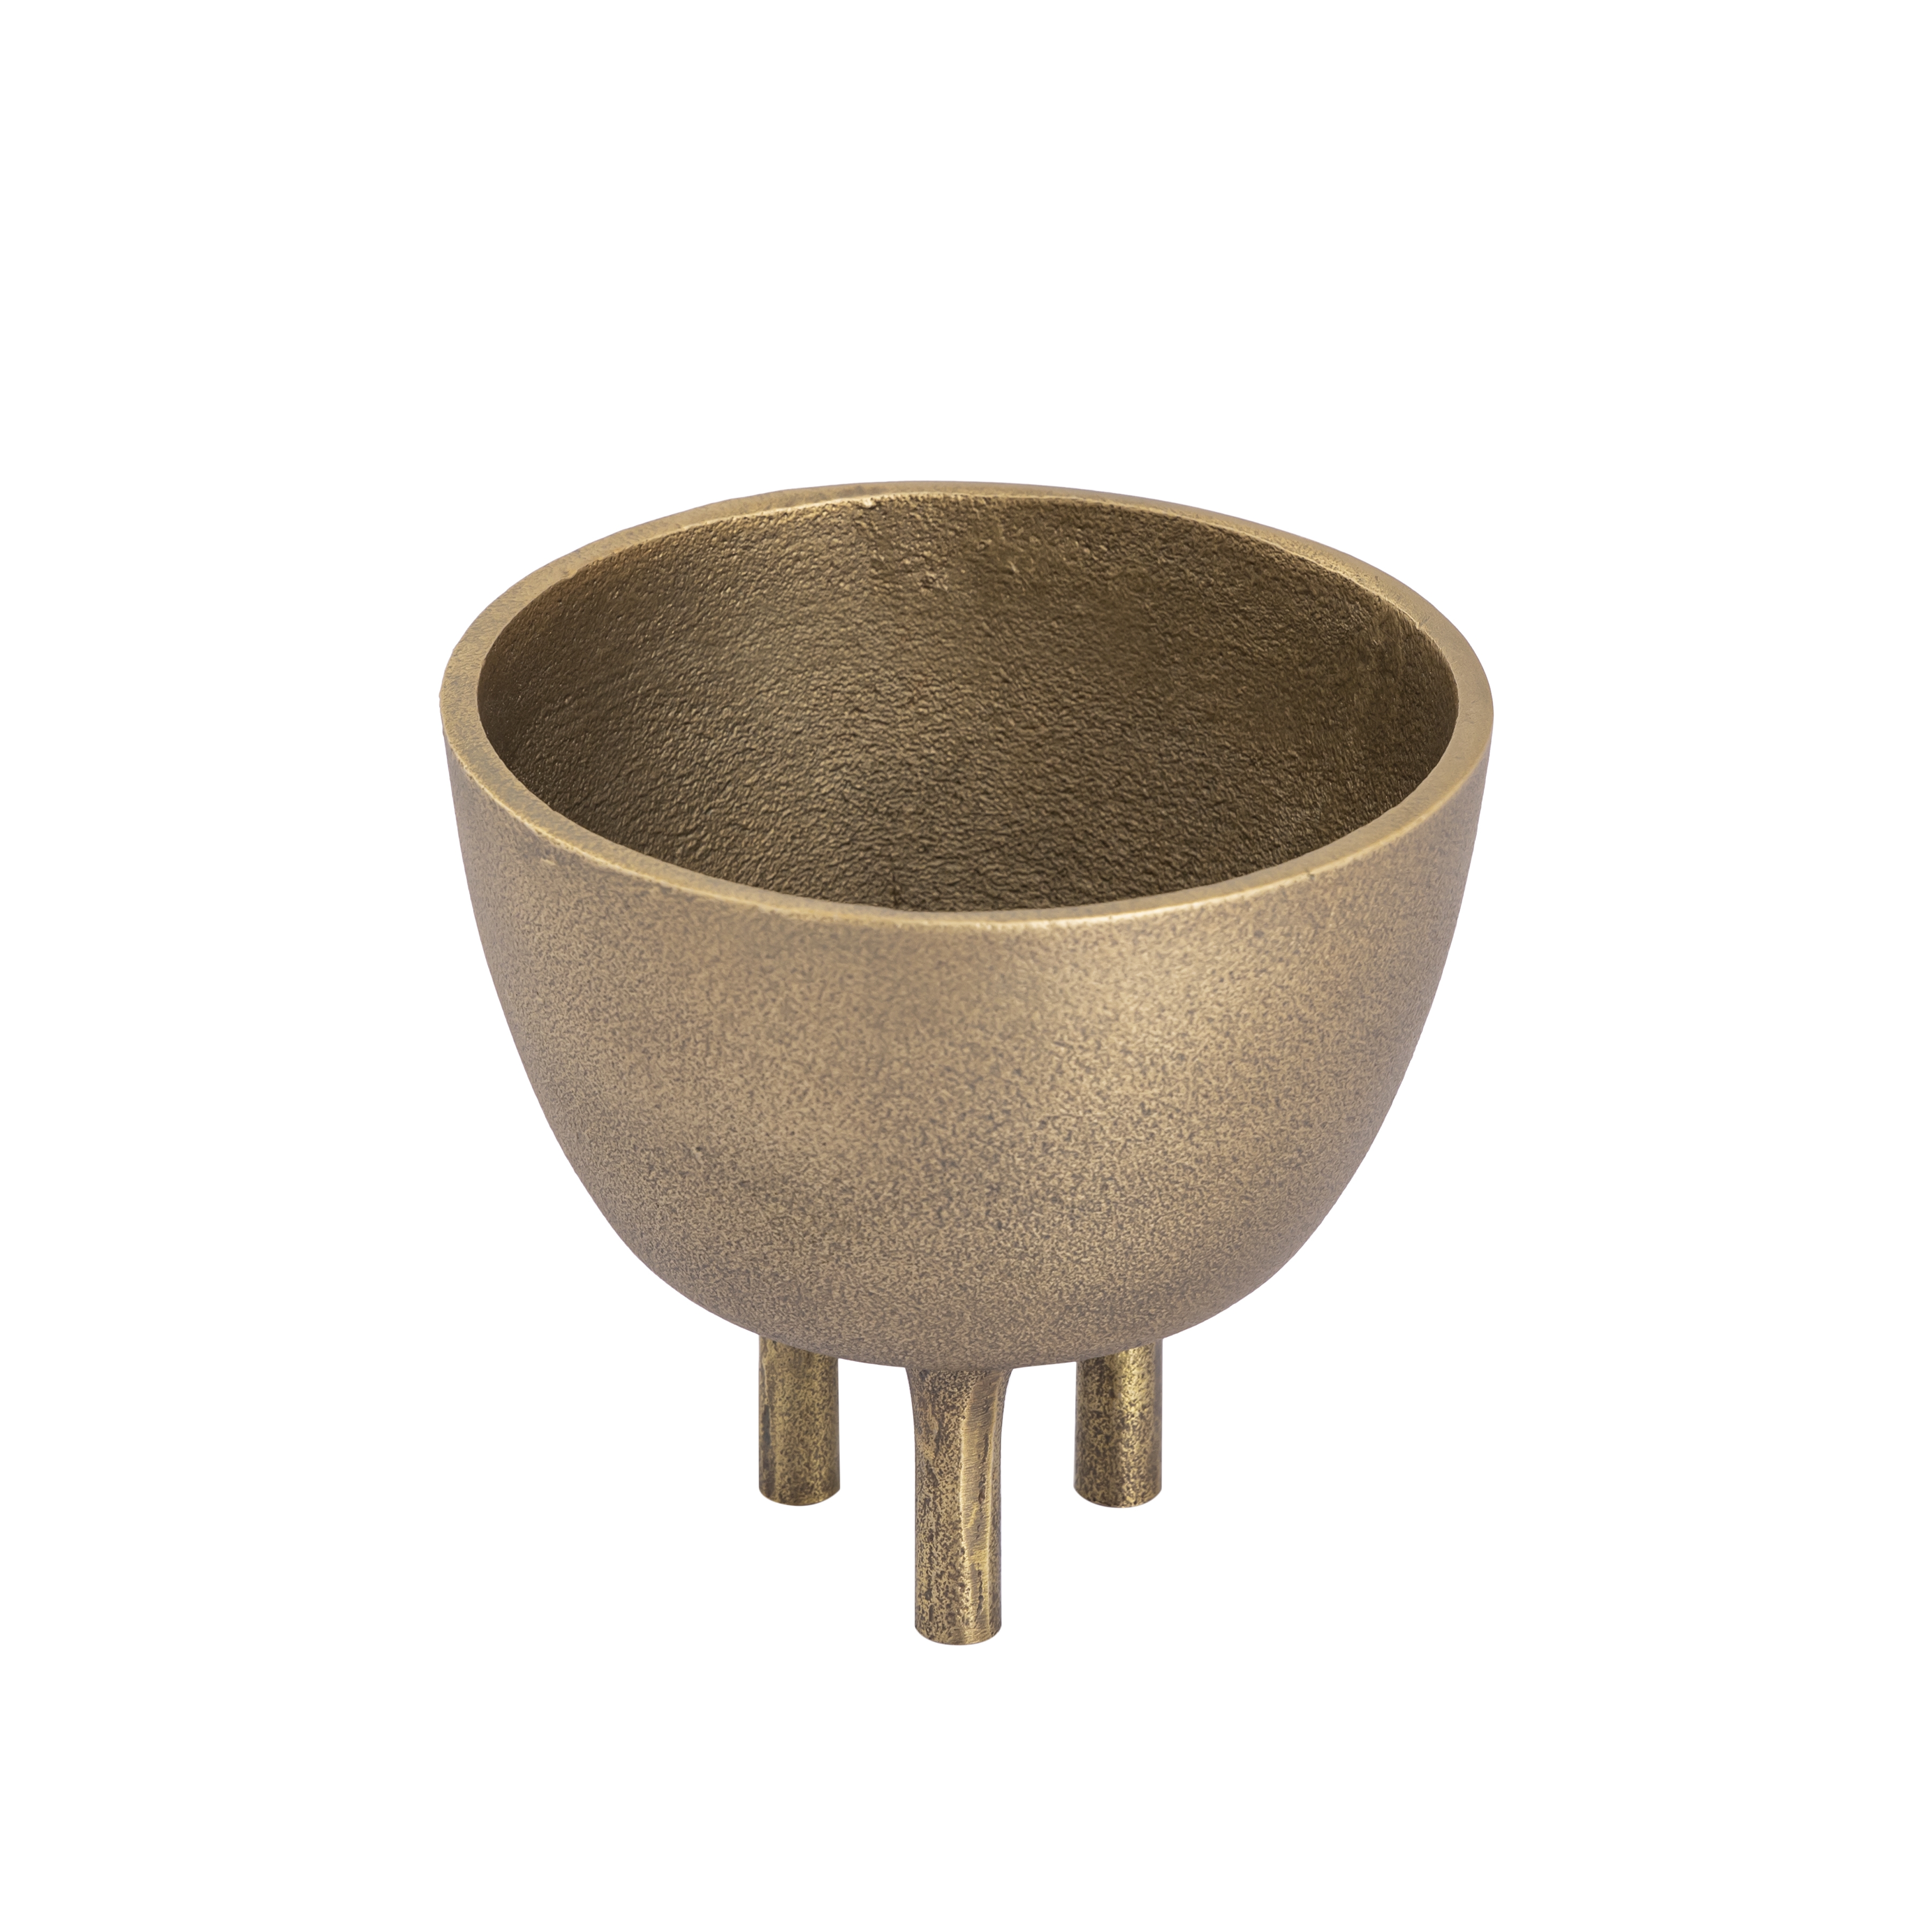 Kiser Bowl - Small Brass - Image 1